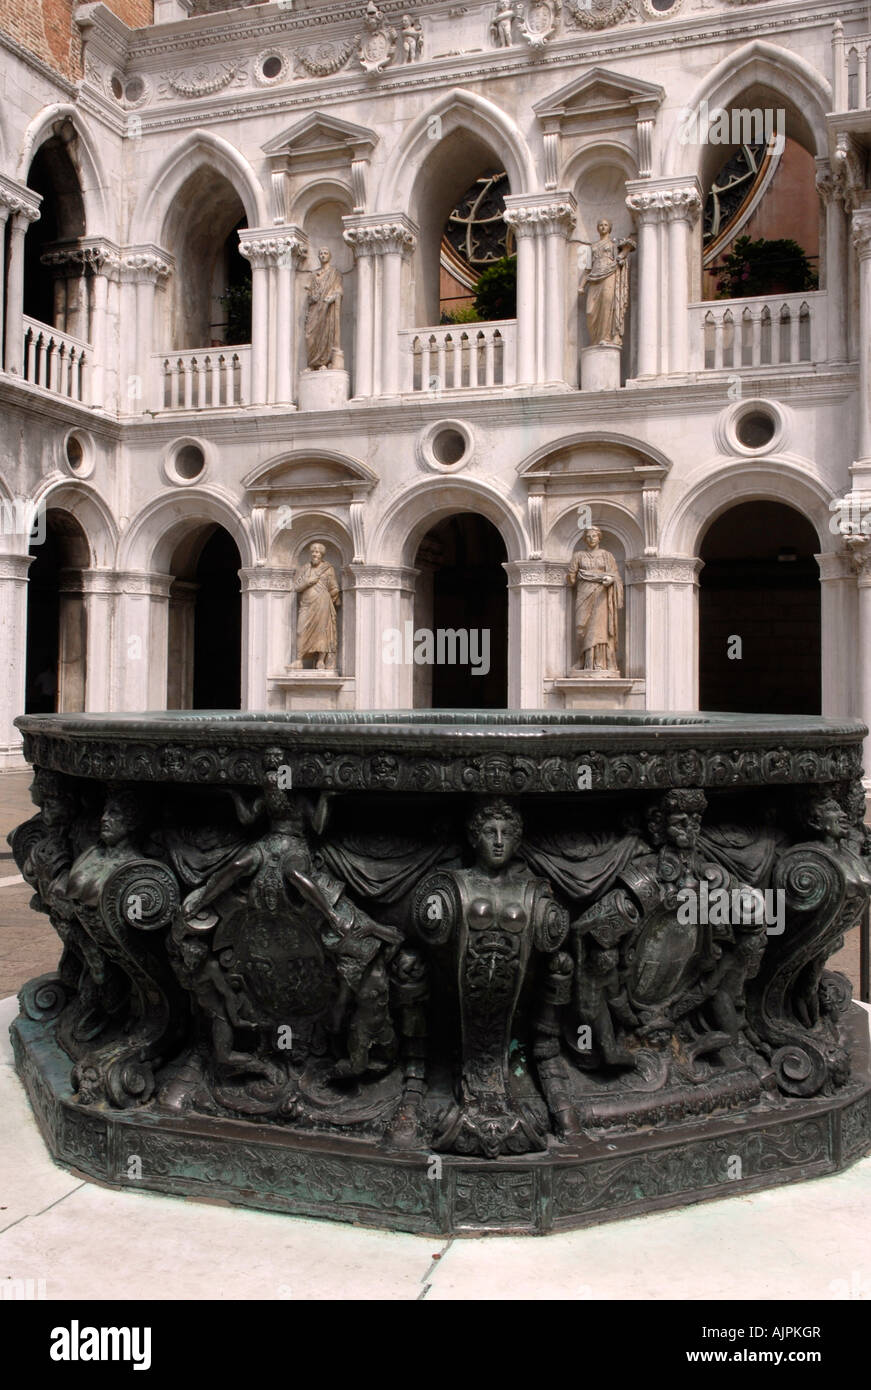 L'acqua piovana e cortile interno di Palazzo Ducale Venezia Italia Foto Stock